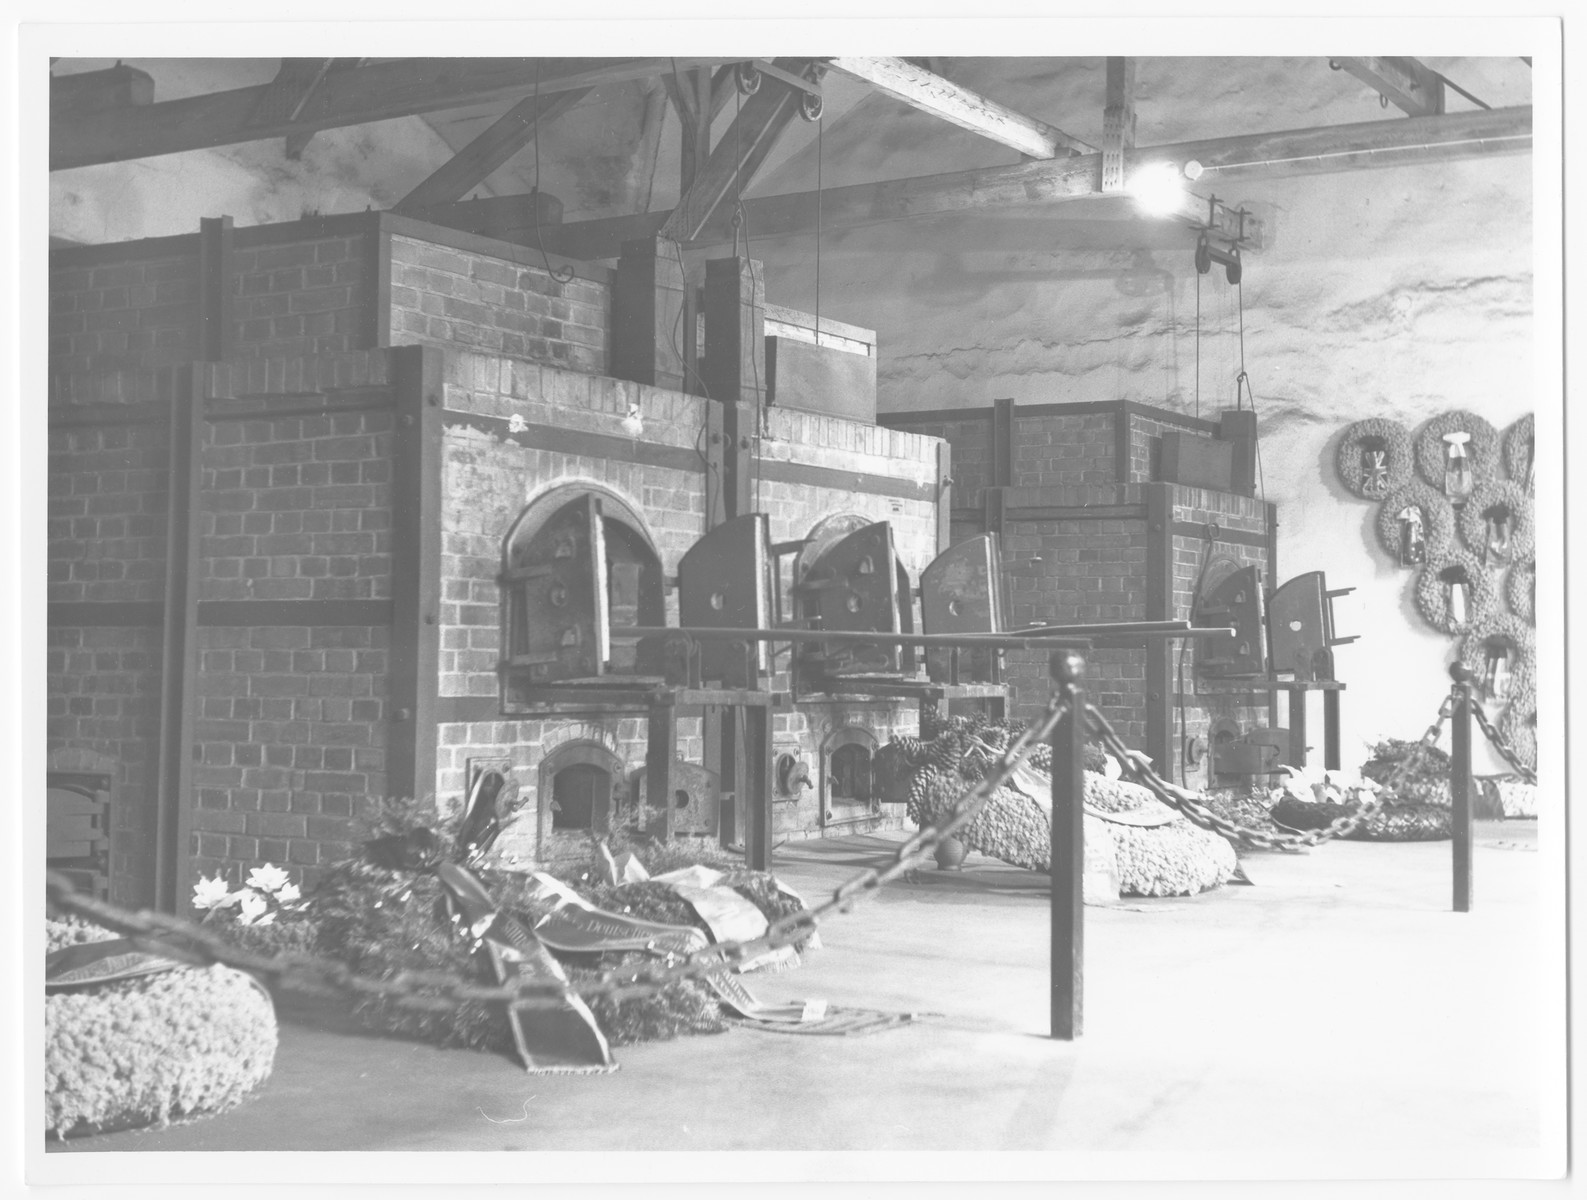 Postwar view of wreaths bedecking the interior of the Dachau crematorium.